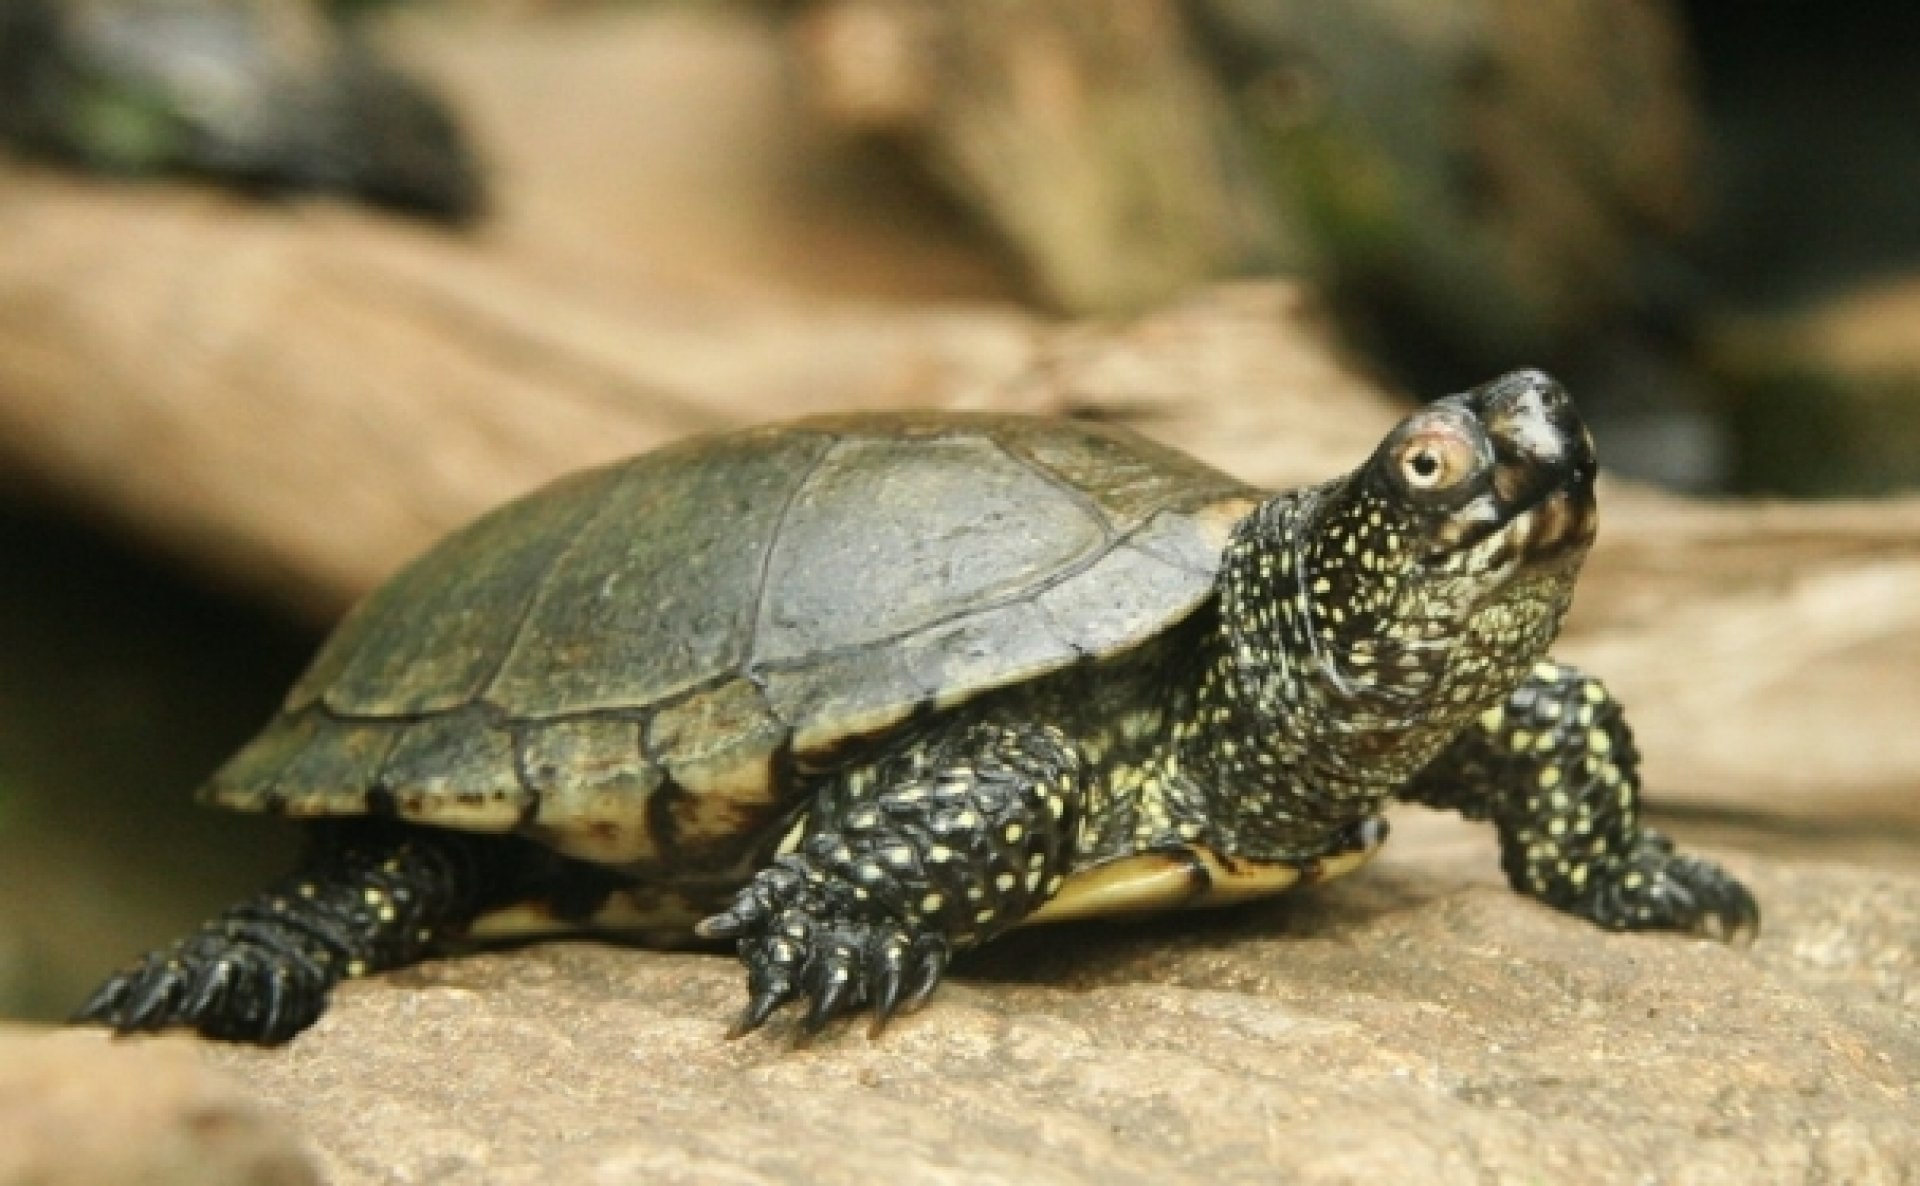 Черепаха 6 букв. Европейская Болотная черепаха. Среднеазиатская Болотная черепаха. Болотная черепаха Emys orbicularis (Linnaeus, 1758). Европейская Болотная черепаха (Emys orbicularis).